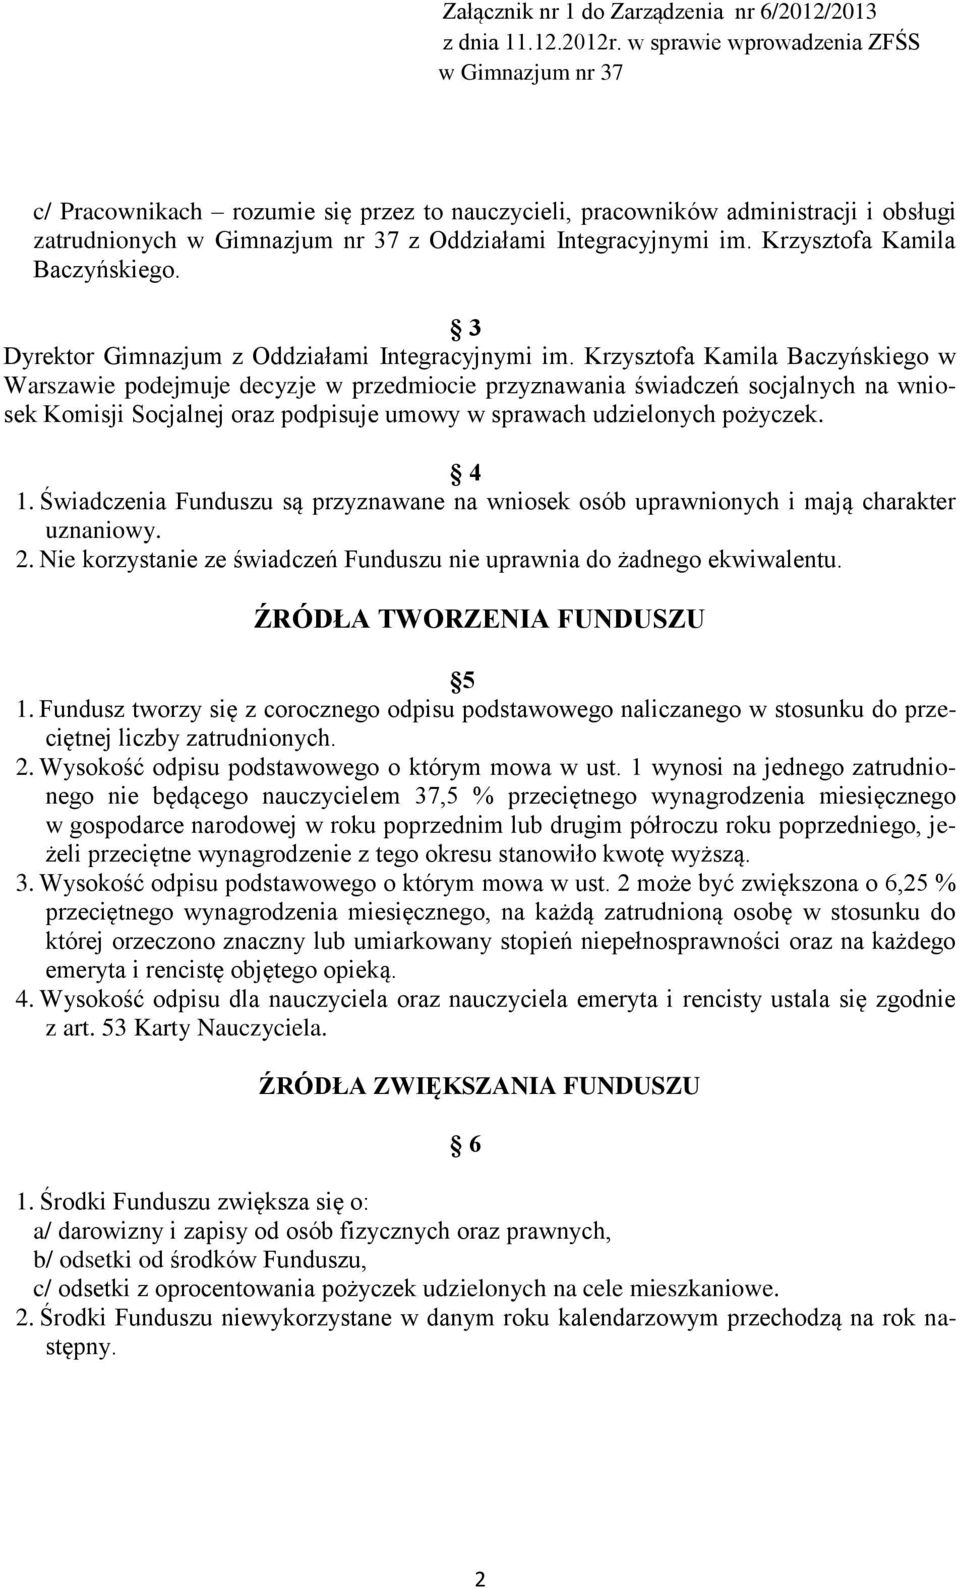 Krzysztofa Kamila Baczyńskiego w Warszawie podejmuje decyzje w przedmiocie przyznawania świadczeń socjalnych na wniosek Komisji Socjalnej oraz podpisuje umowy w sprawach udzielonych pożyczek. 4 1.